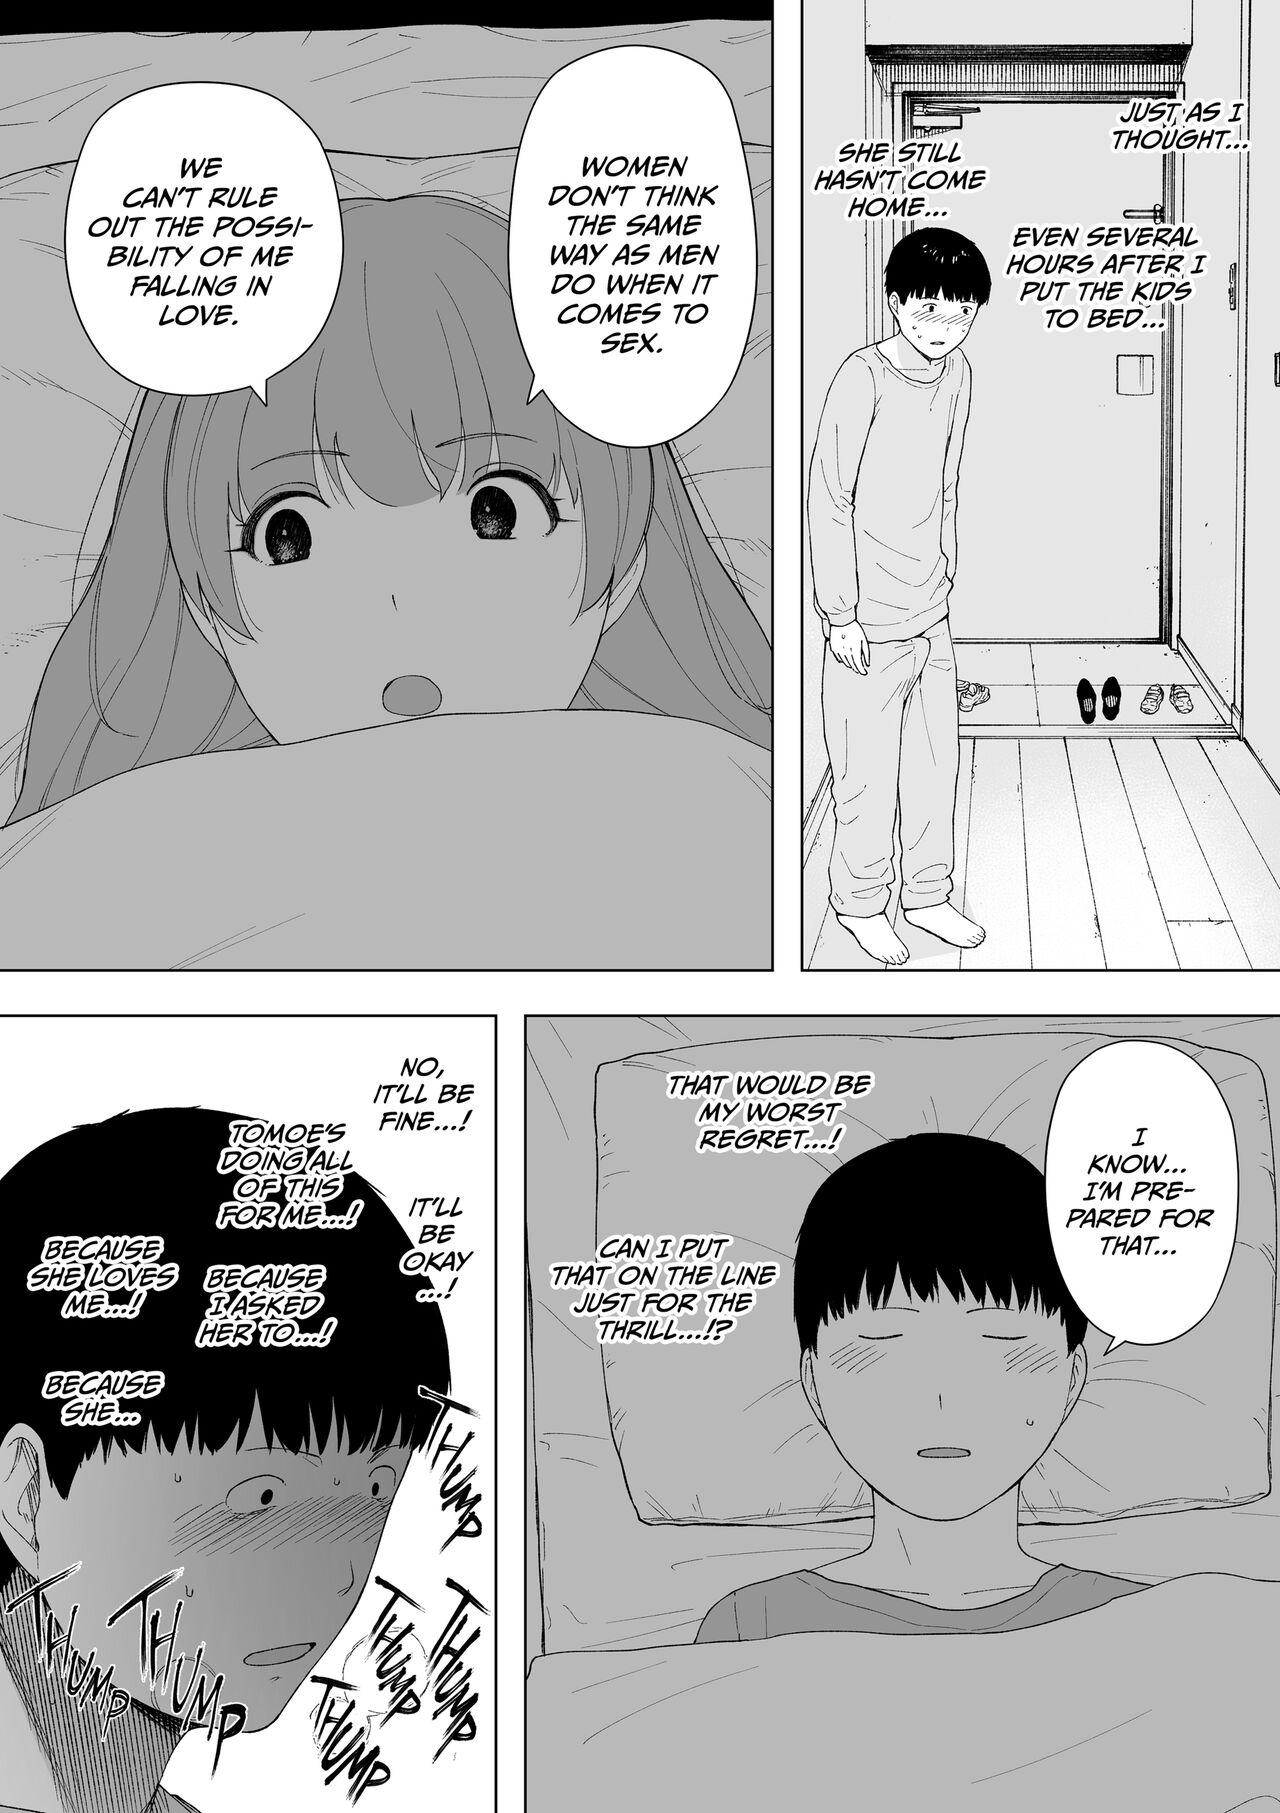 Spain Aisai, Doui no Ue, Netorare 5 - Original Anime - Page 7